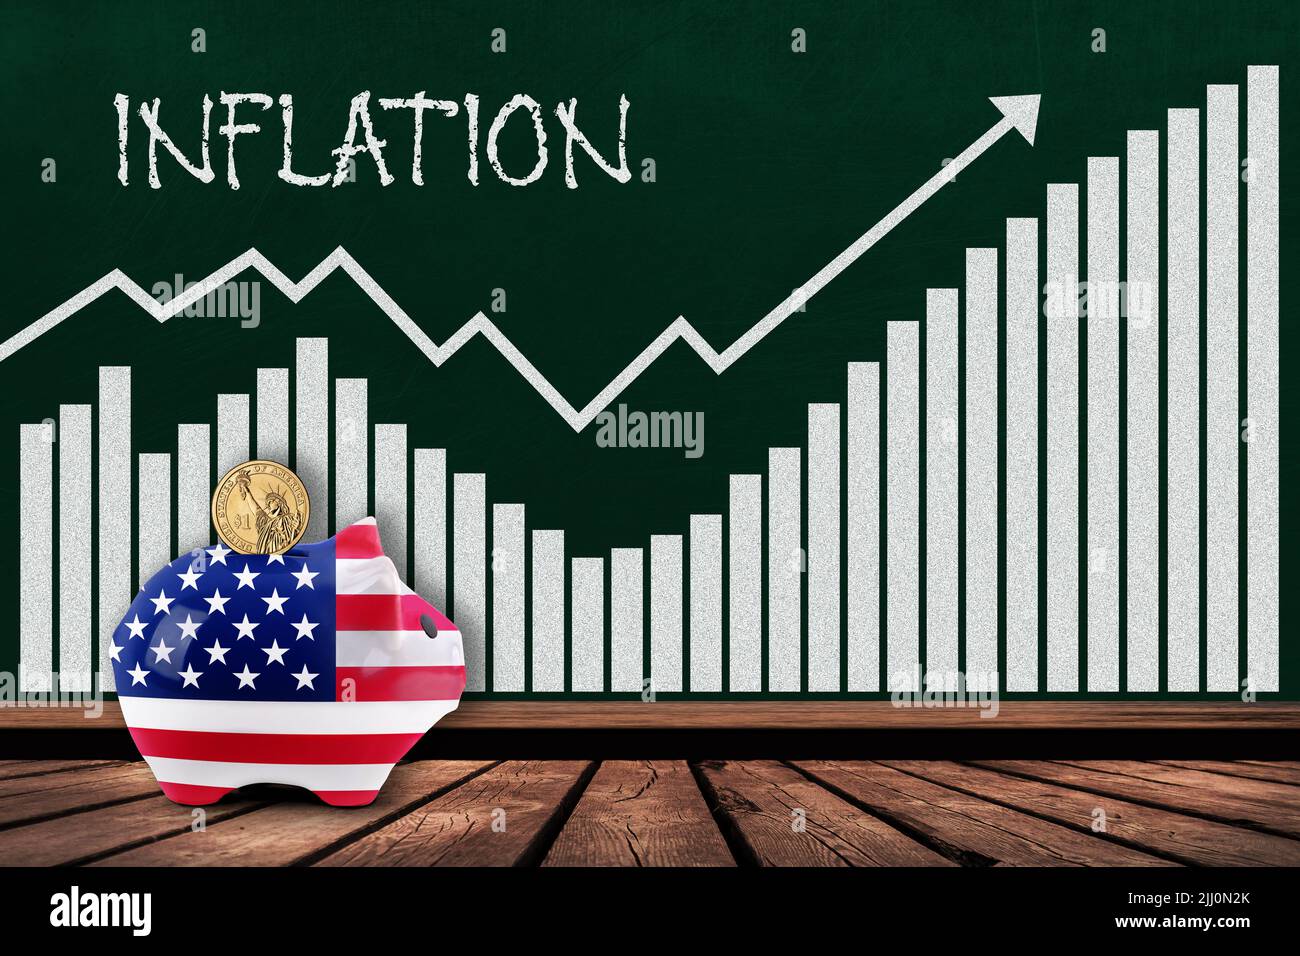 Inflation aux États-Unis concept montrant le graphique à barres sur tableau noir avec la banque piggy peinte dans le drapeau américain et la pièce de monnaie dollar. Illustration de l'augmentation de l'inflation Banque D'Images